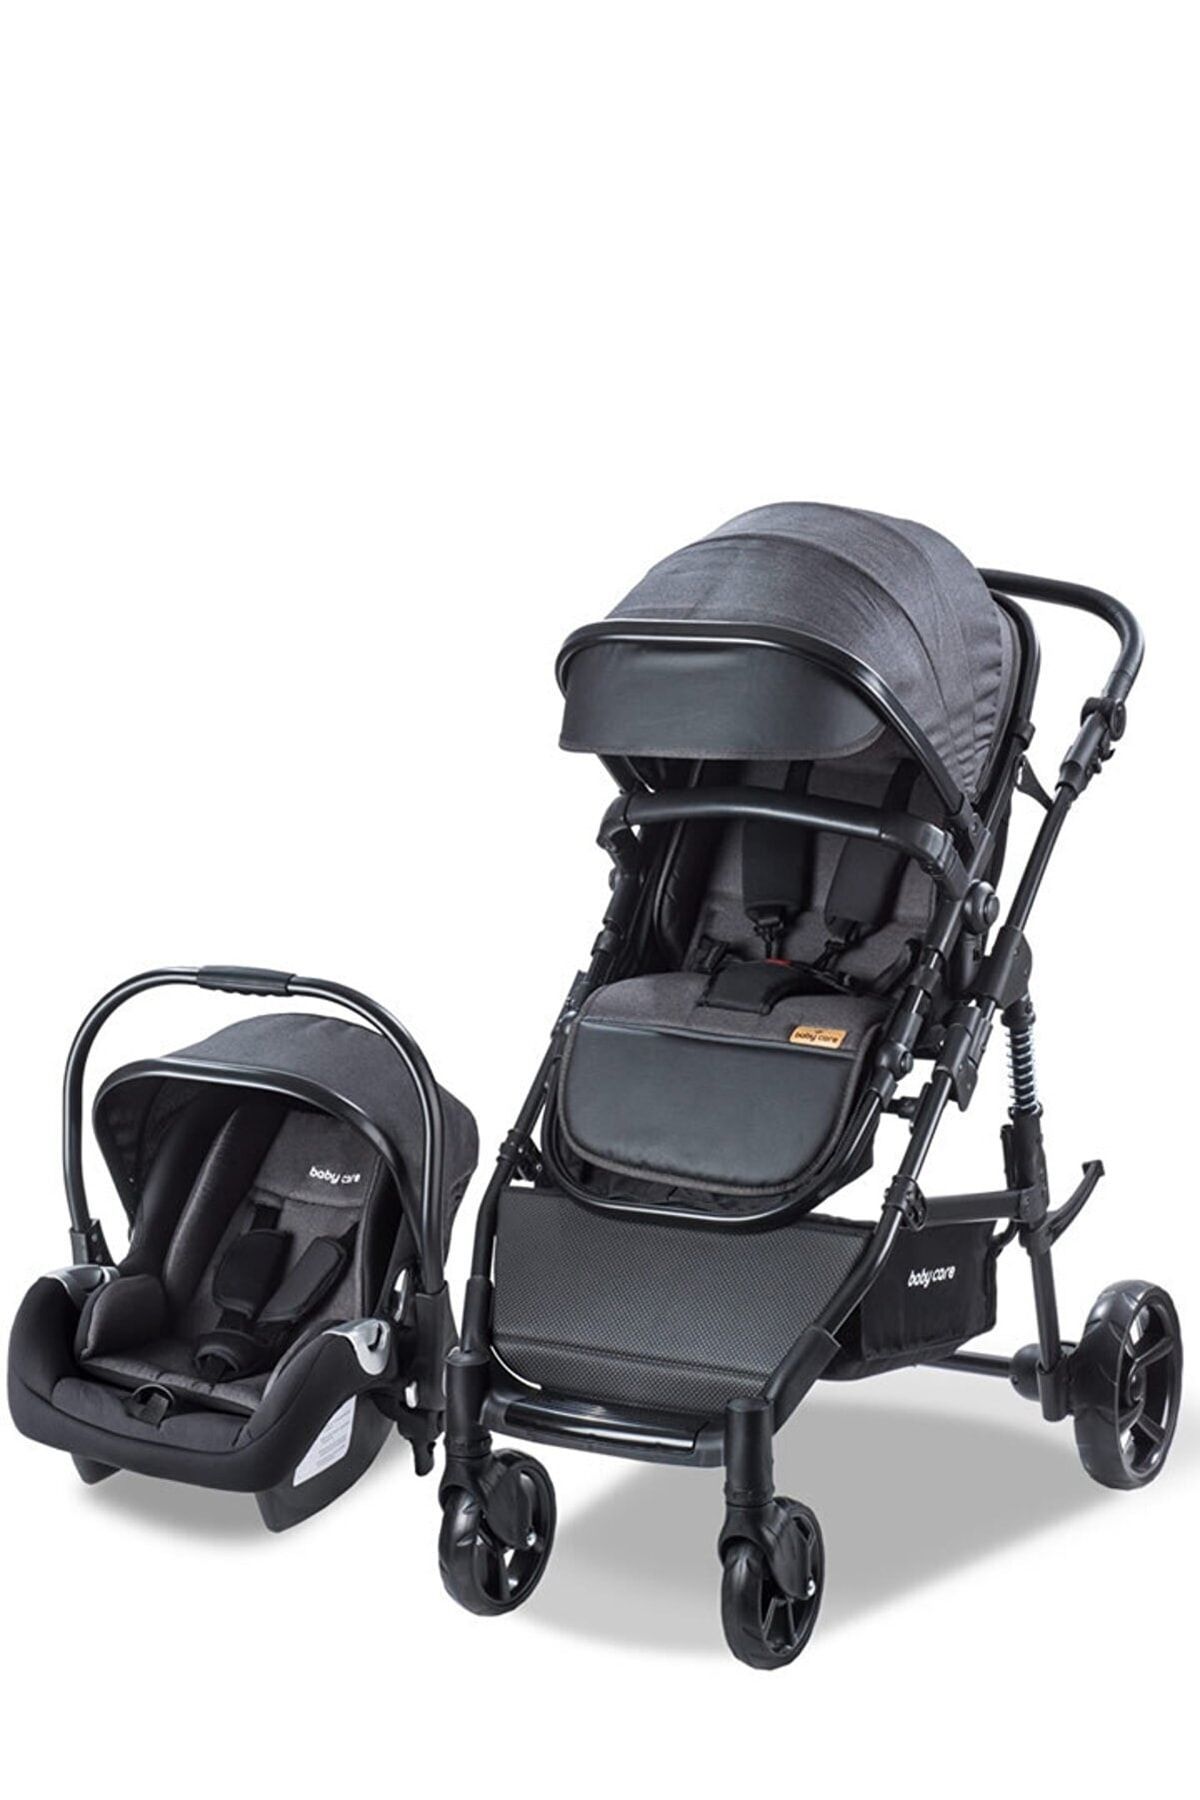 Baby Care Bc 340 Bora Cross - Travel Sistem Bebek Arabası - Siyah